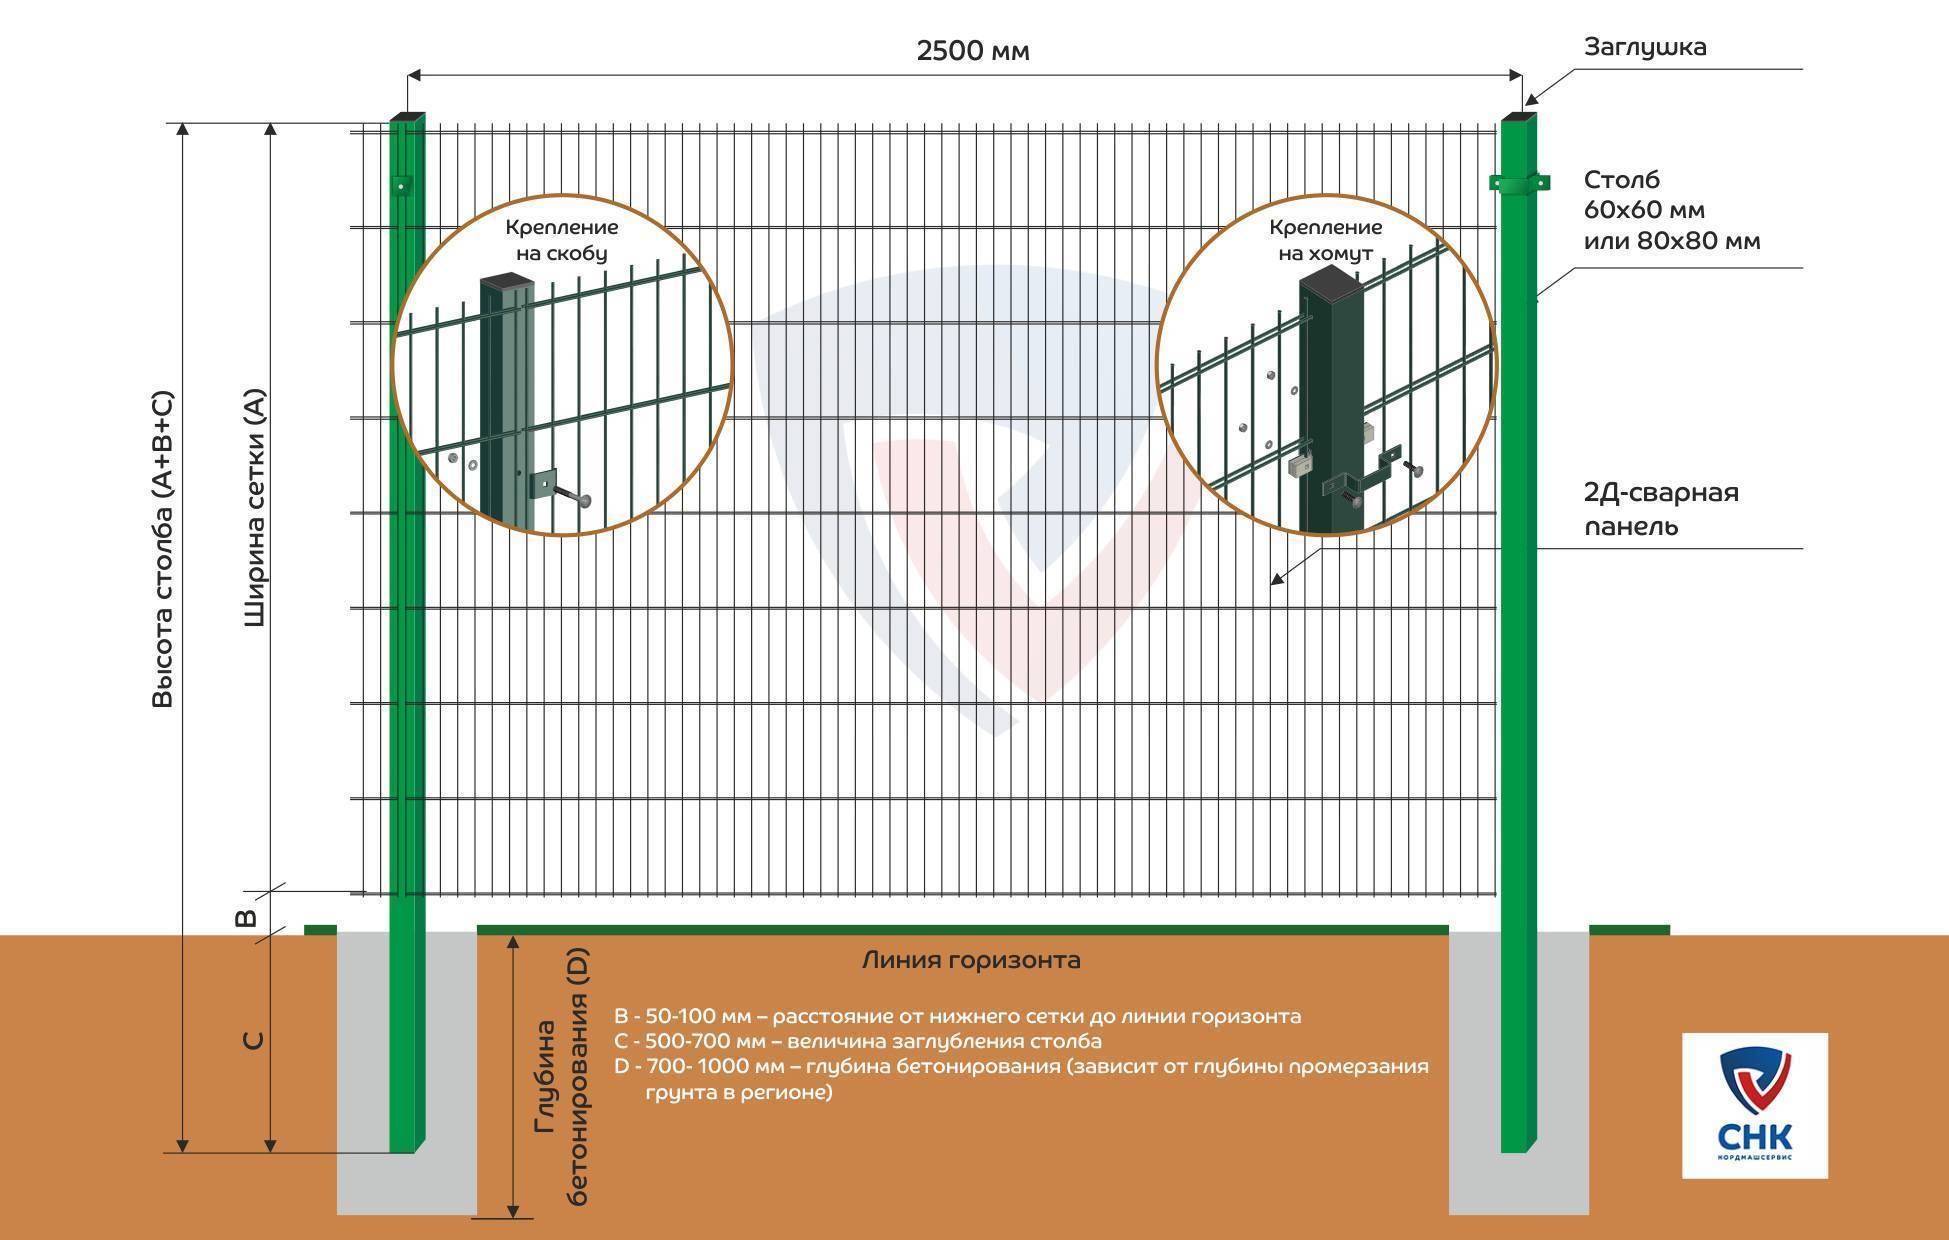 Заборы из сварной сетки - преимущества и недостатки (46 фото): металлическое секционное ограждение из рулонного материала с полимерным покрытием, размер рулонов